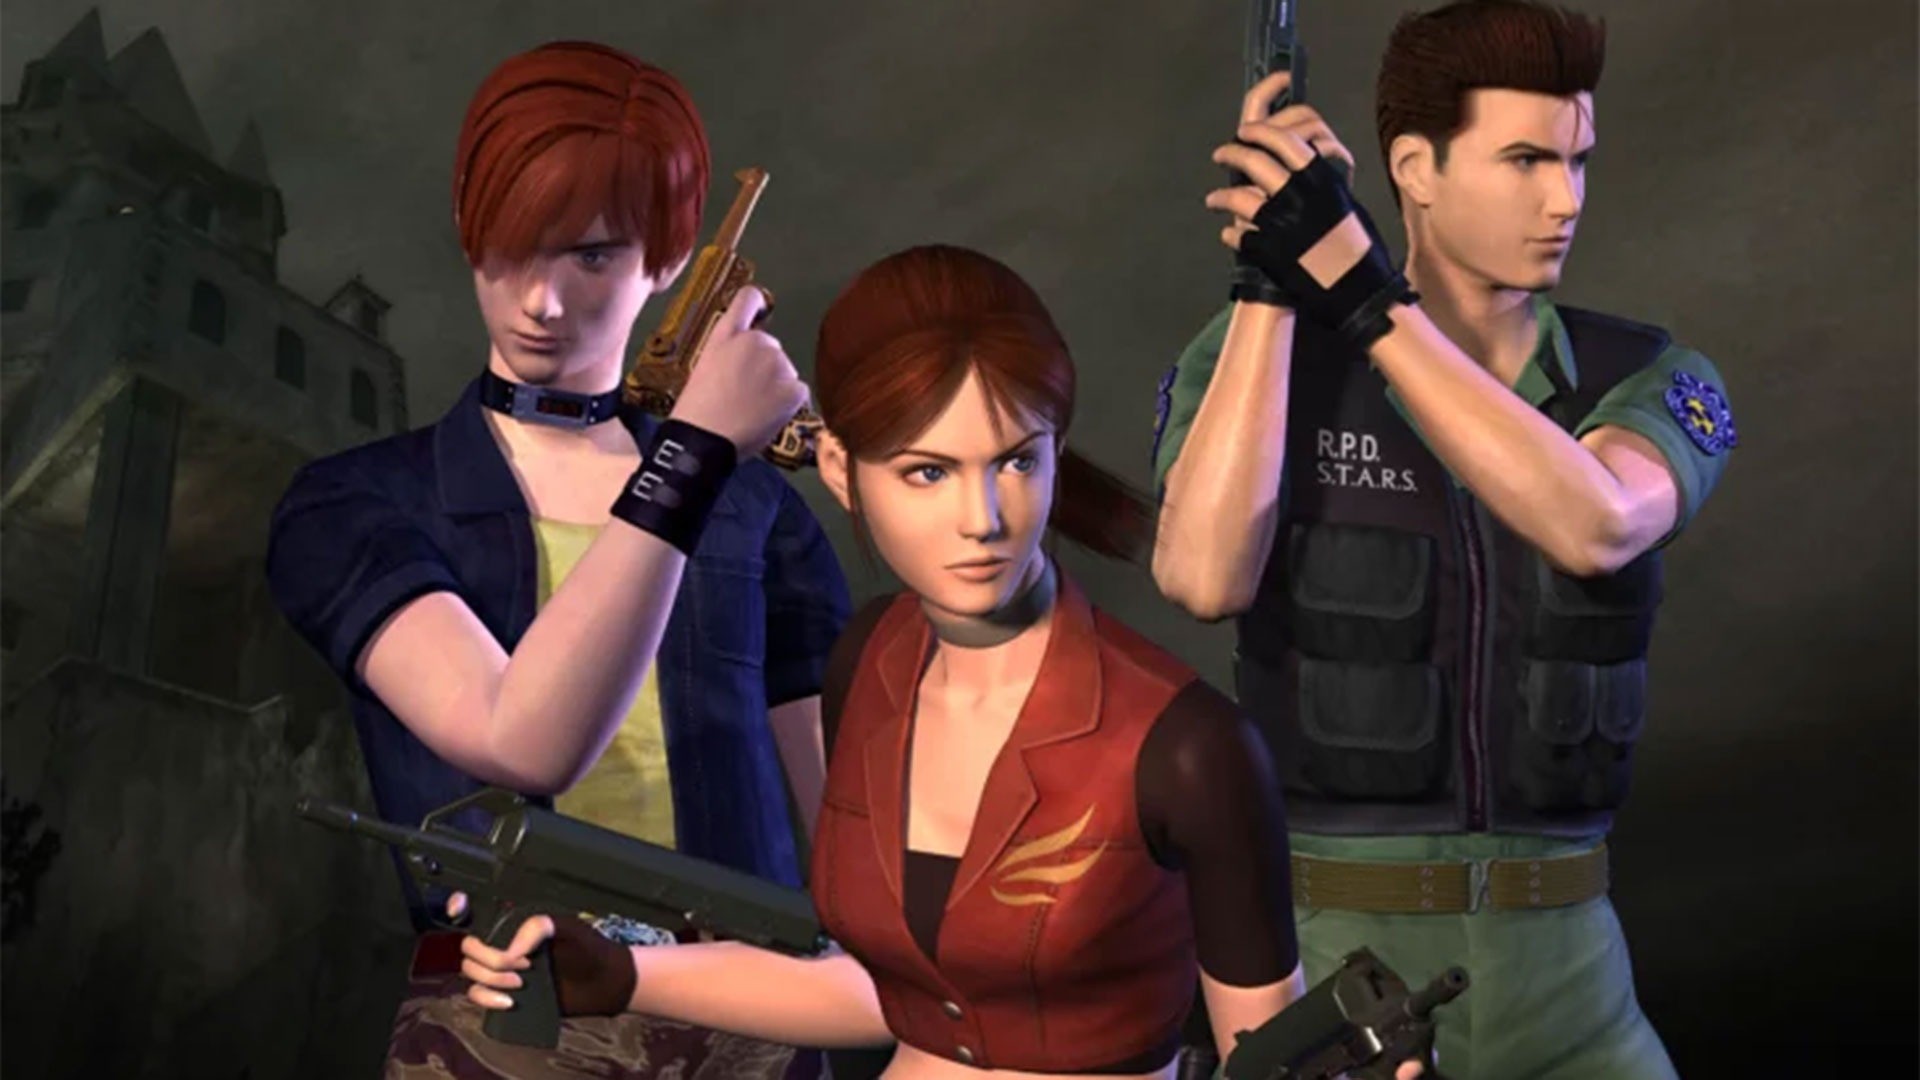 Resident Evil: Death Island  Com 8 minutos, abertura é divulgada